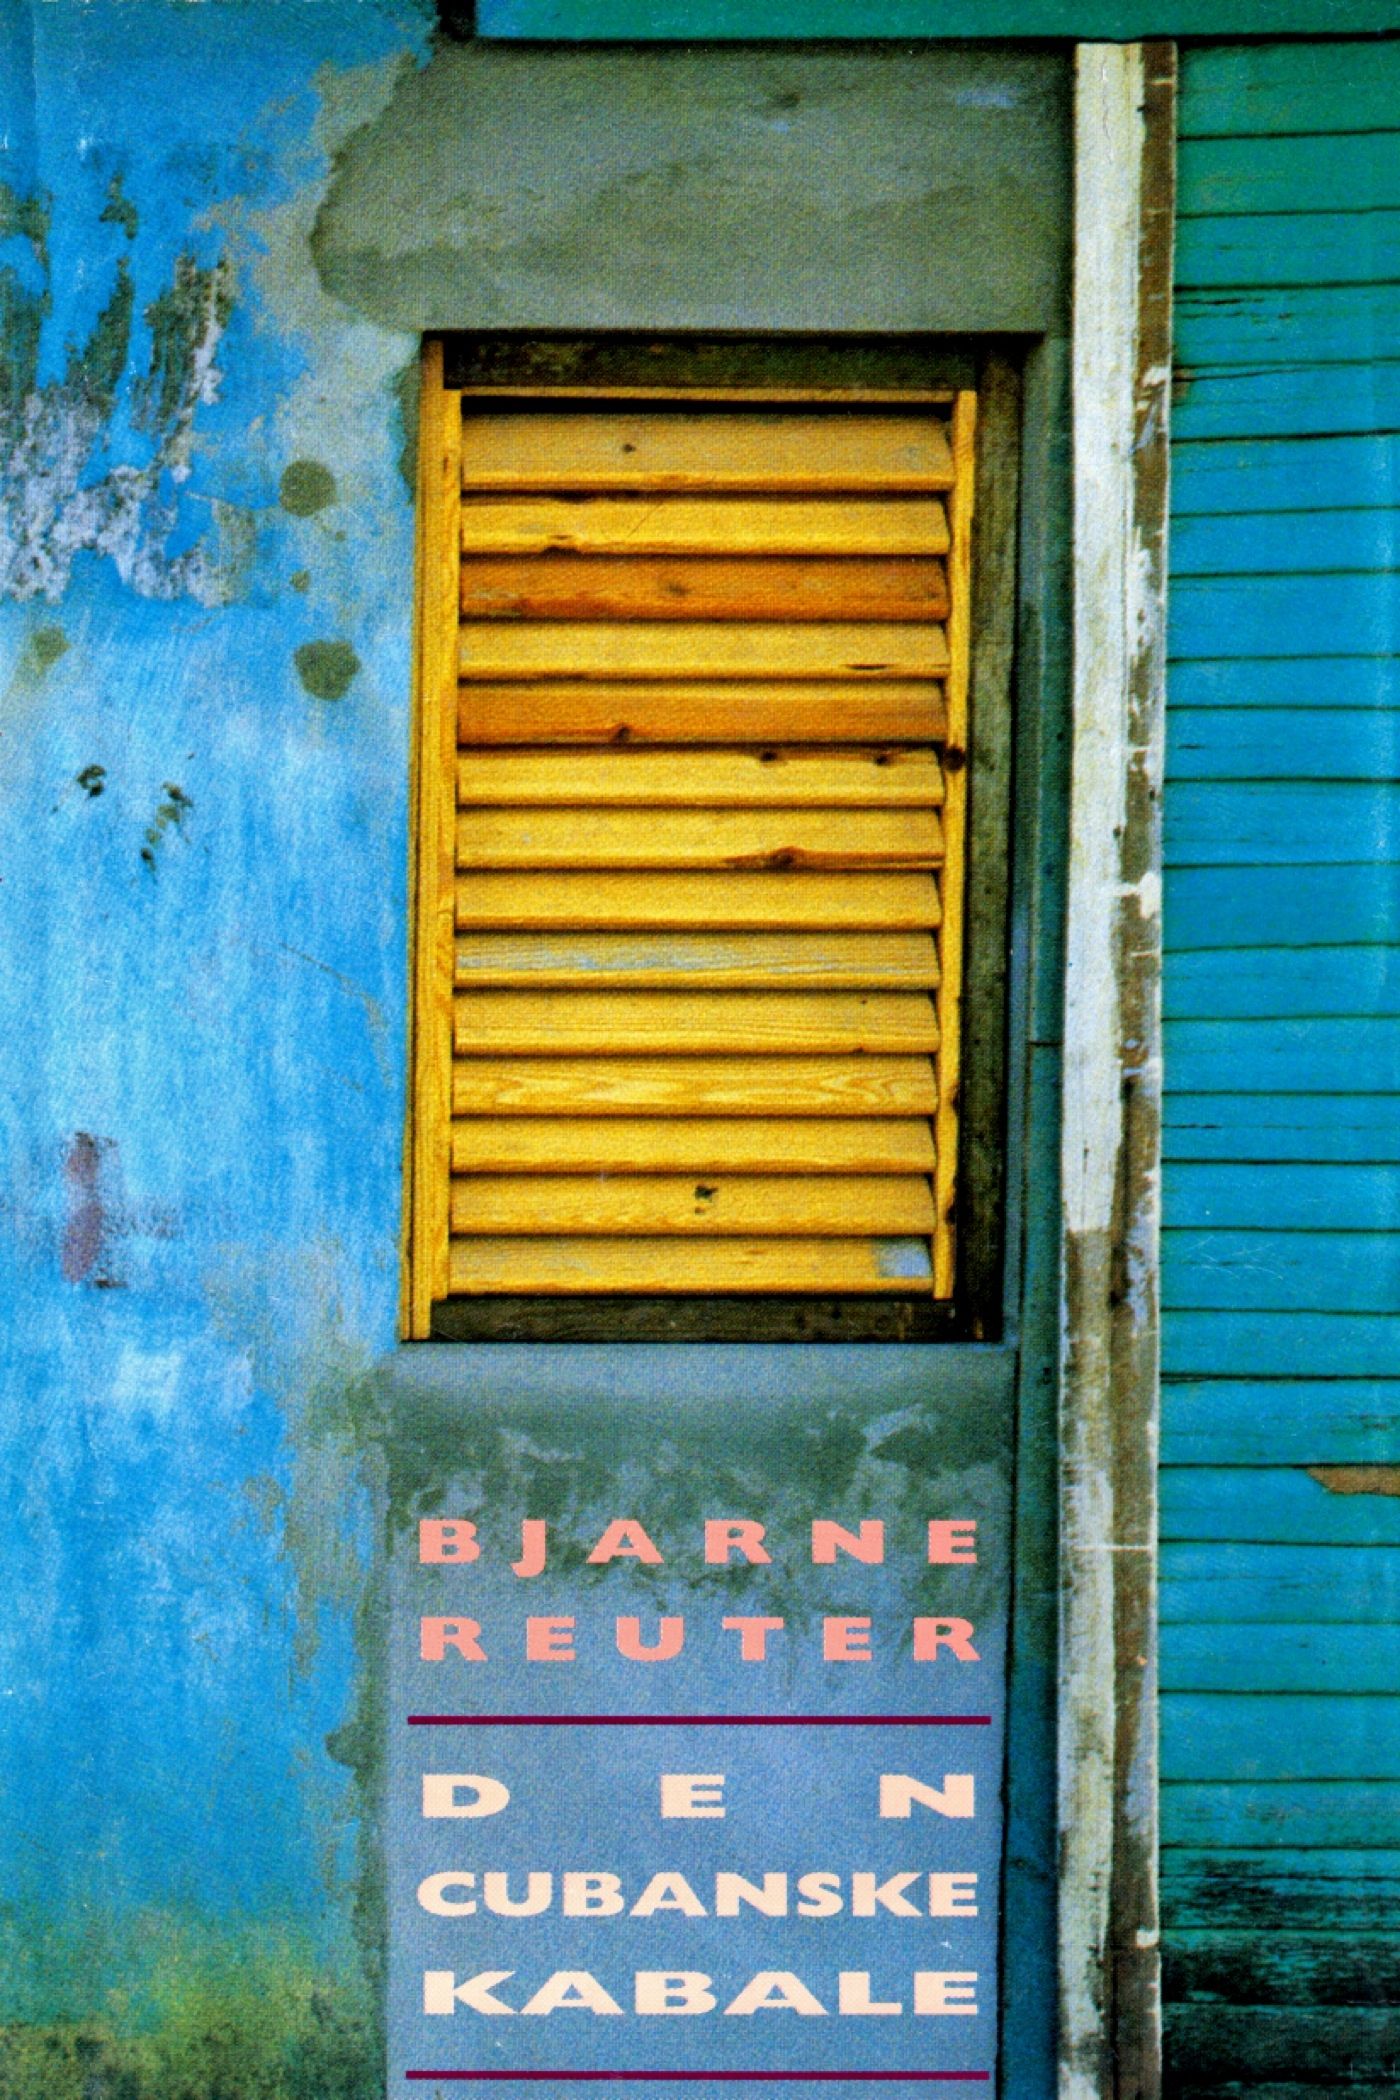 Den cubanske kabale, e-bog af Bjarne Reuter